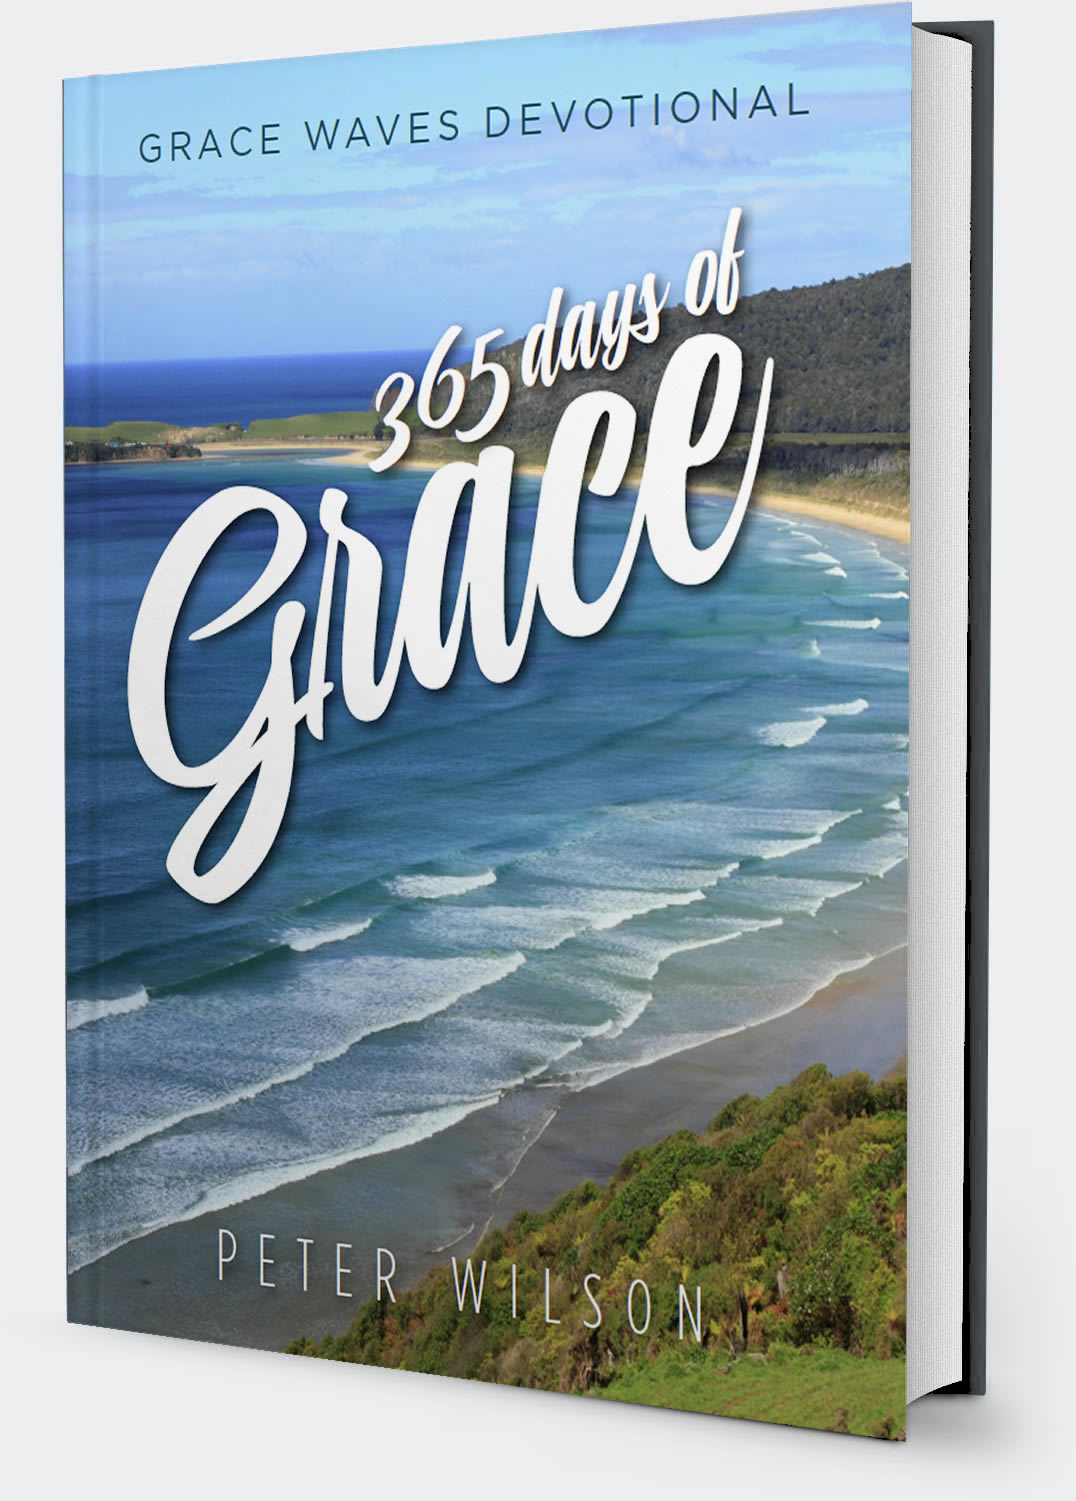 Grace Waves Devotional